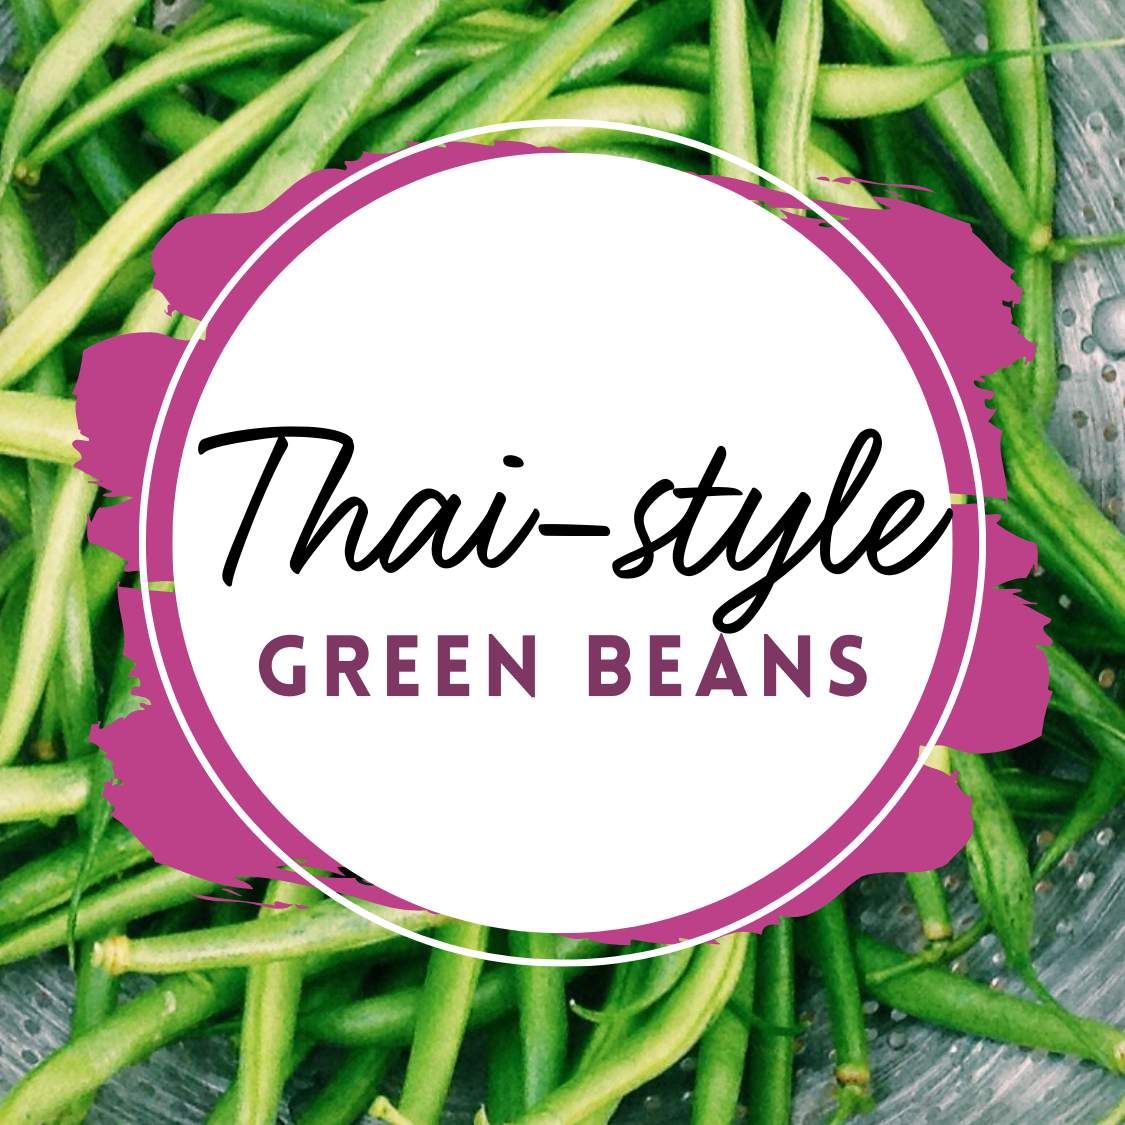 Green Beans in Thai Sauce